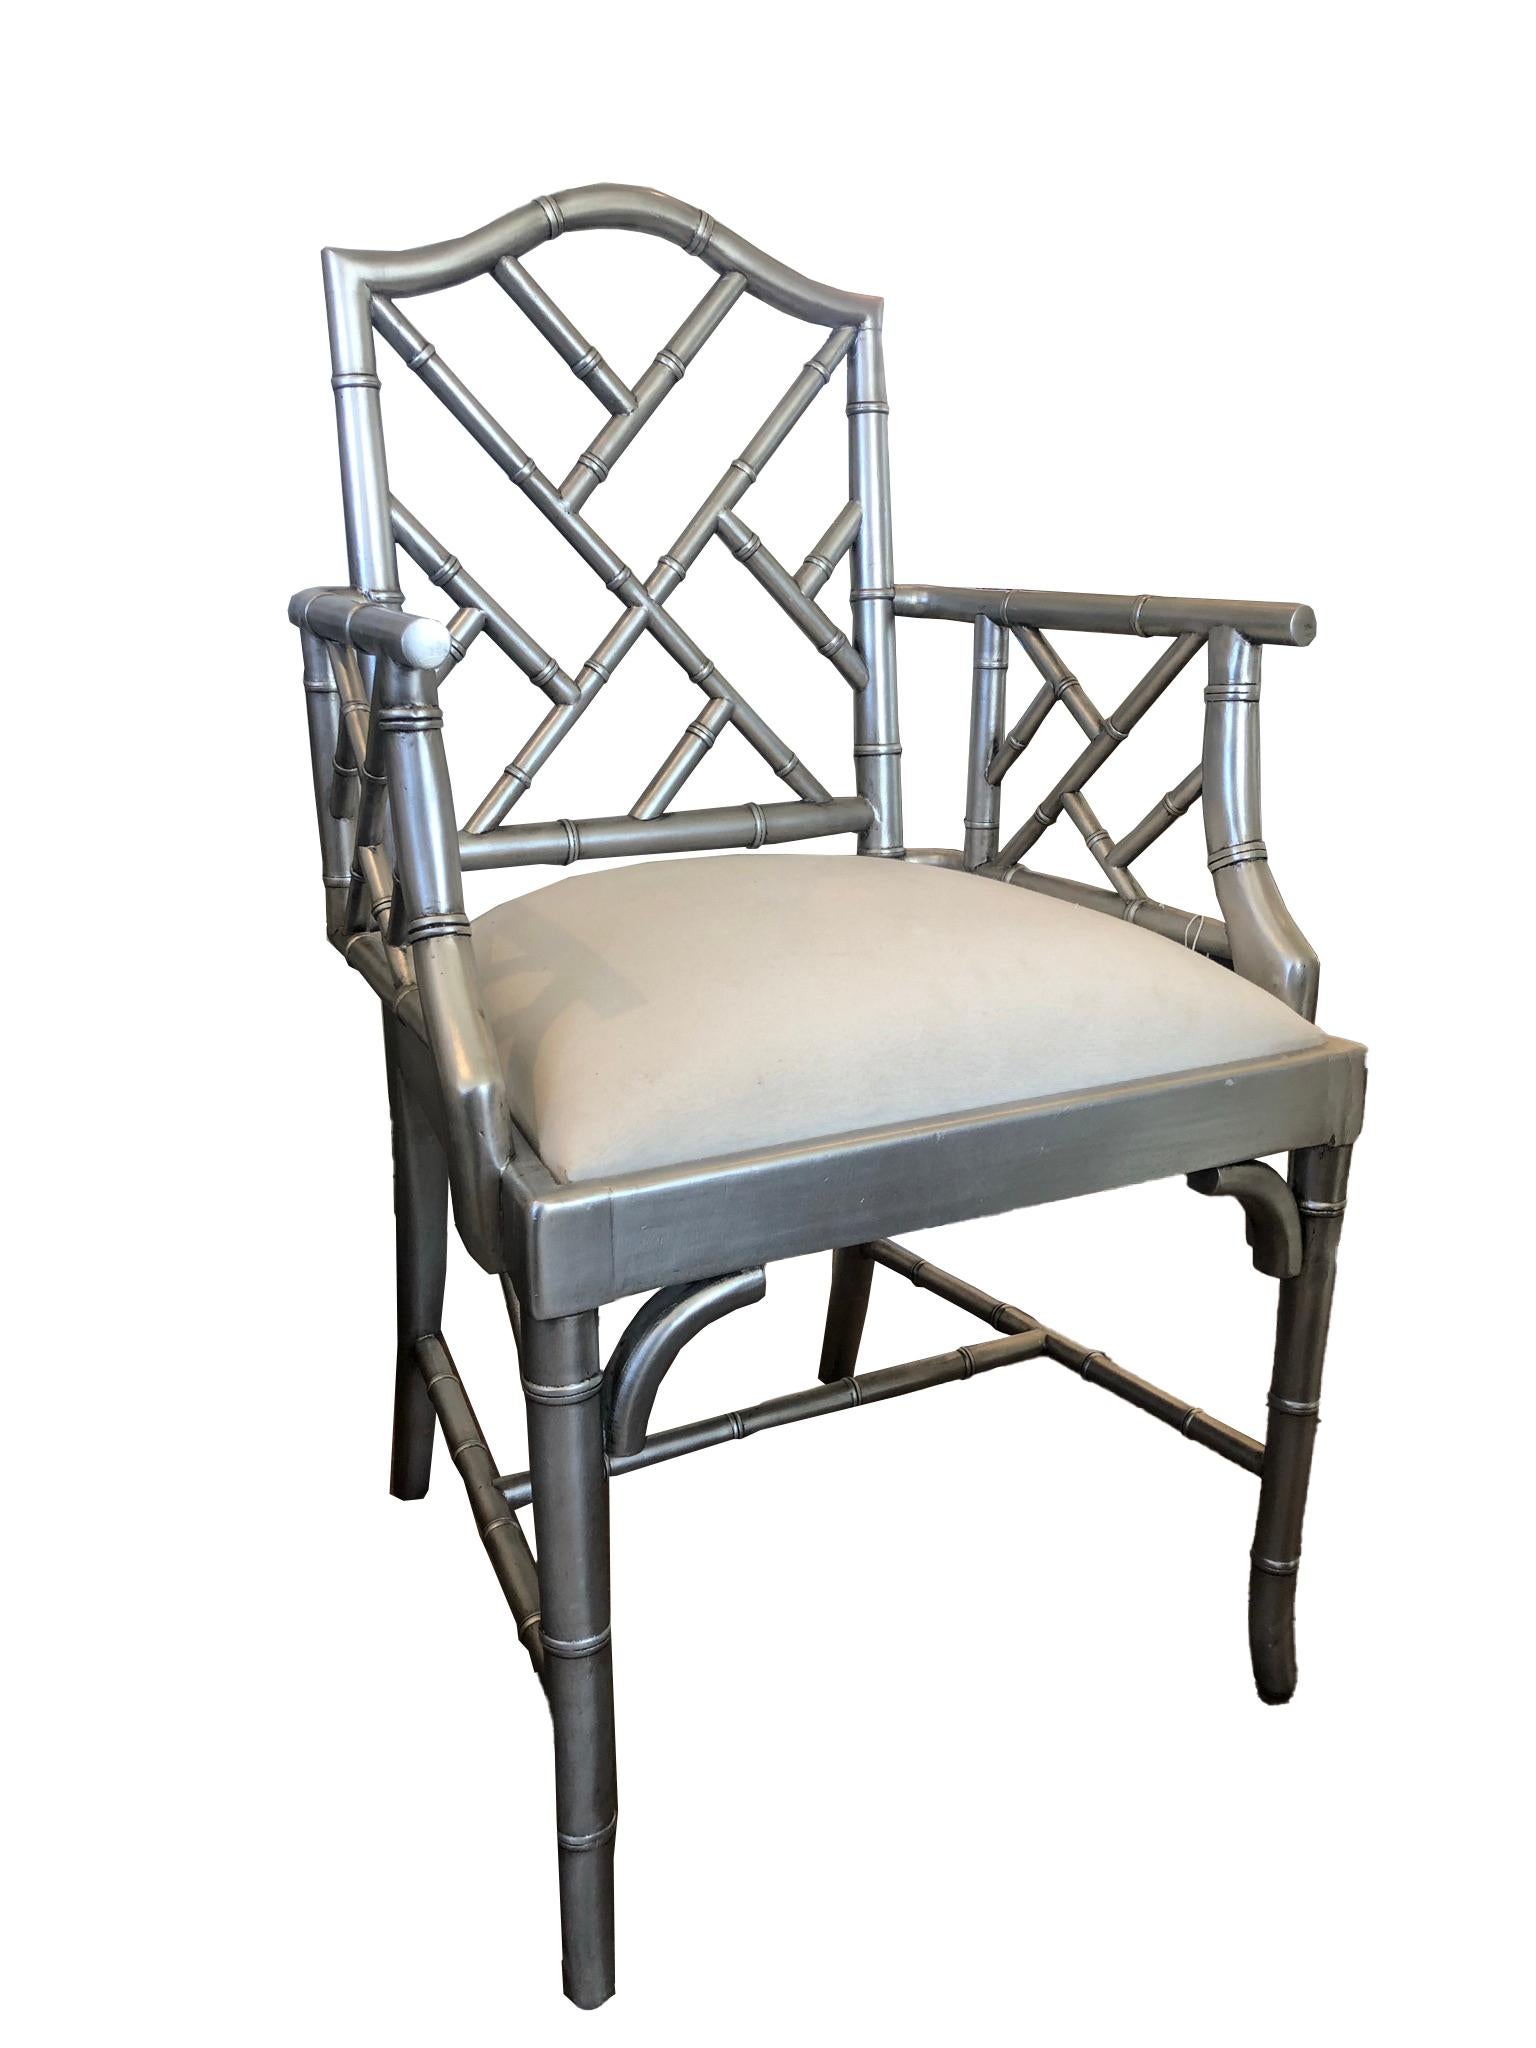 Paire de fauteuils de style Chippendale en bambou, peints à l'argent. Les sièges en lin sont blancs avec un rembourrage plus récent.